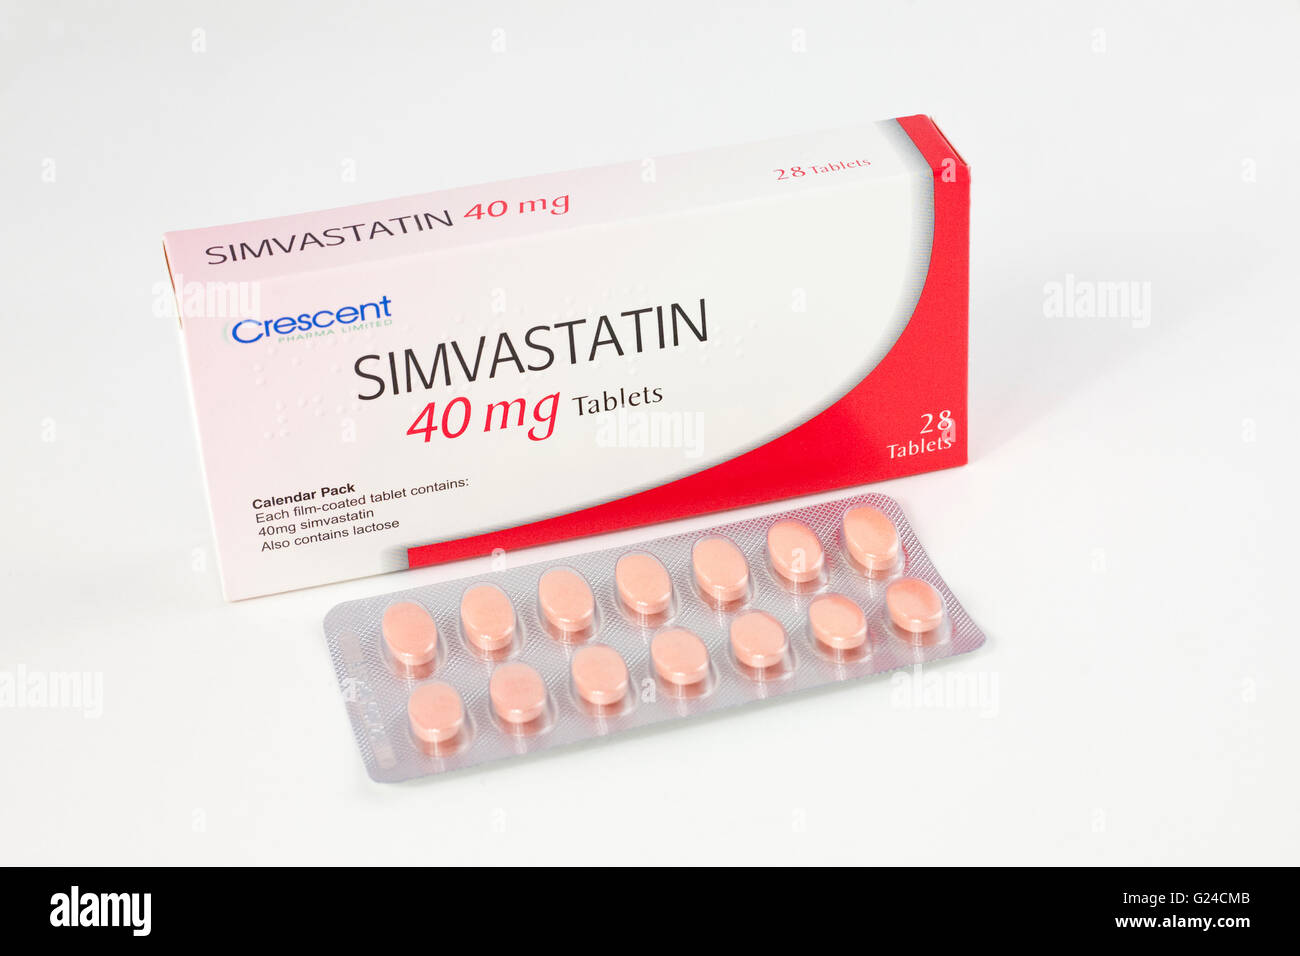 Simvastatin 40mg-Tabletten für die Behandlung von hohem Cholesterin, das Build up verursacht von Fett an den Wänden der Arterien Stockfoto